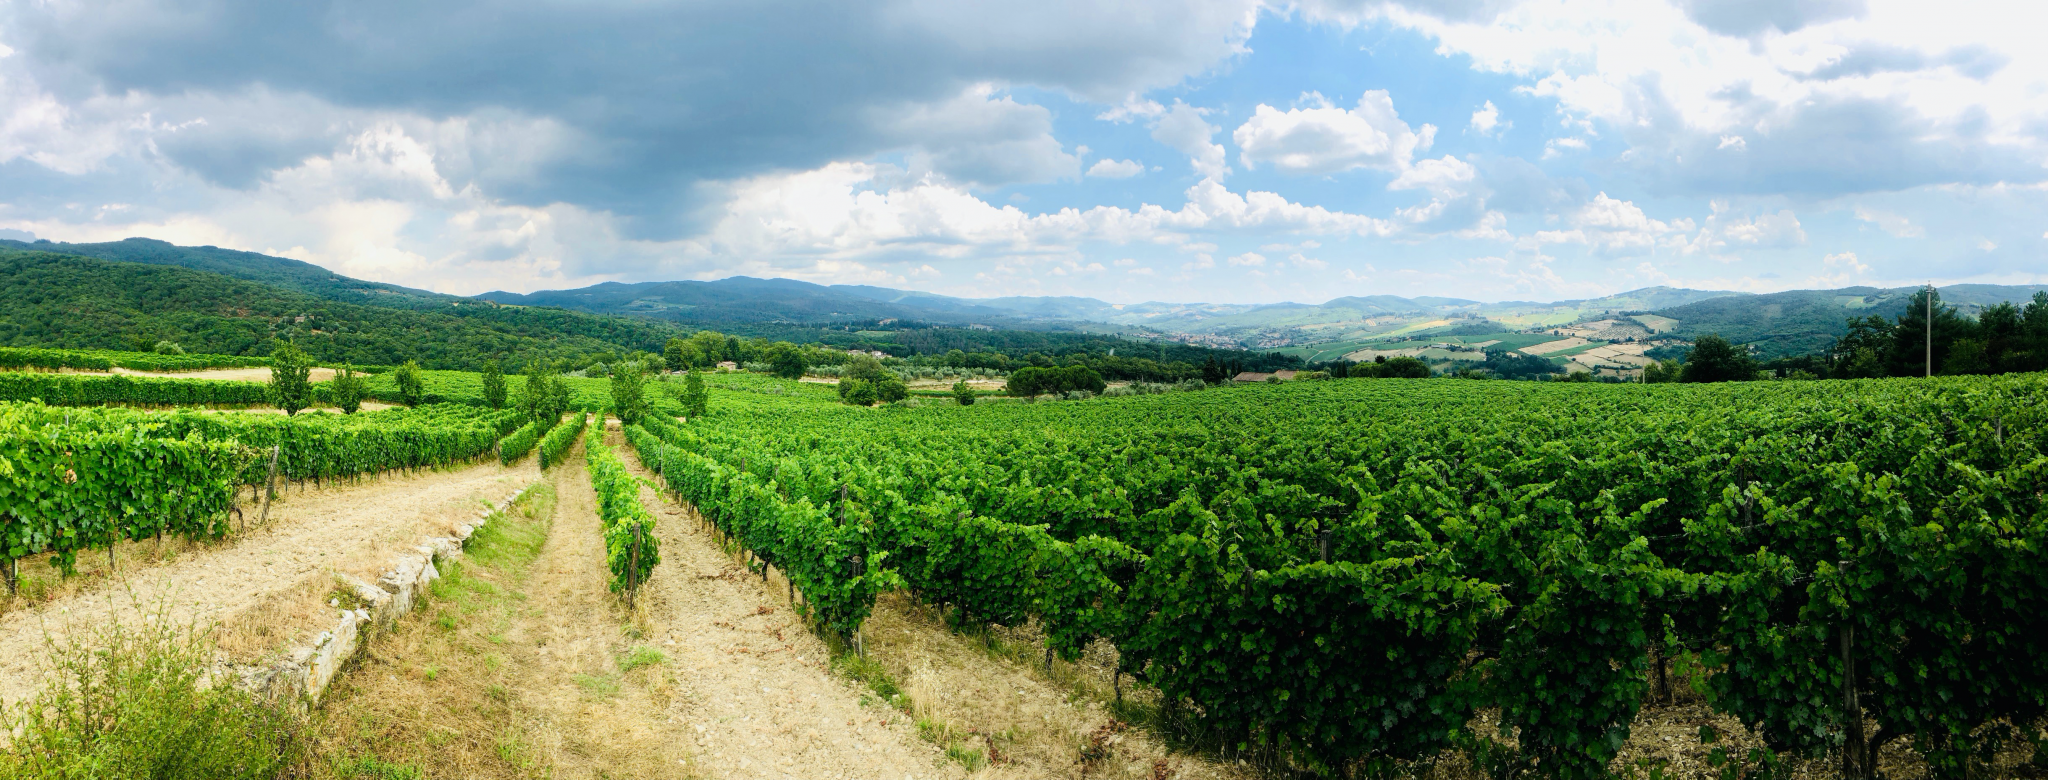 Rapport från Italien om karantän och vin